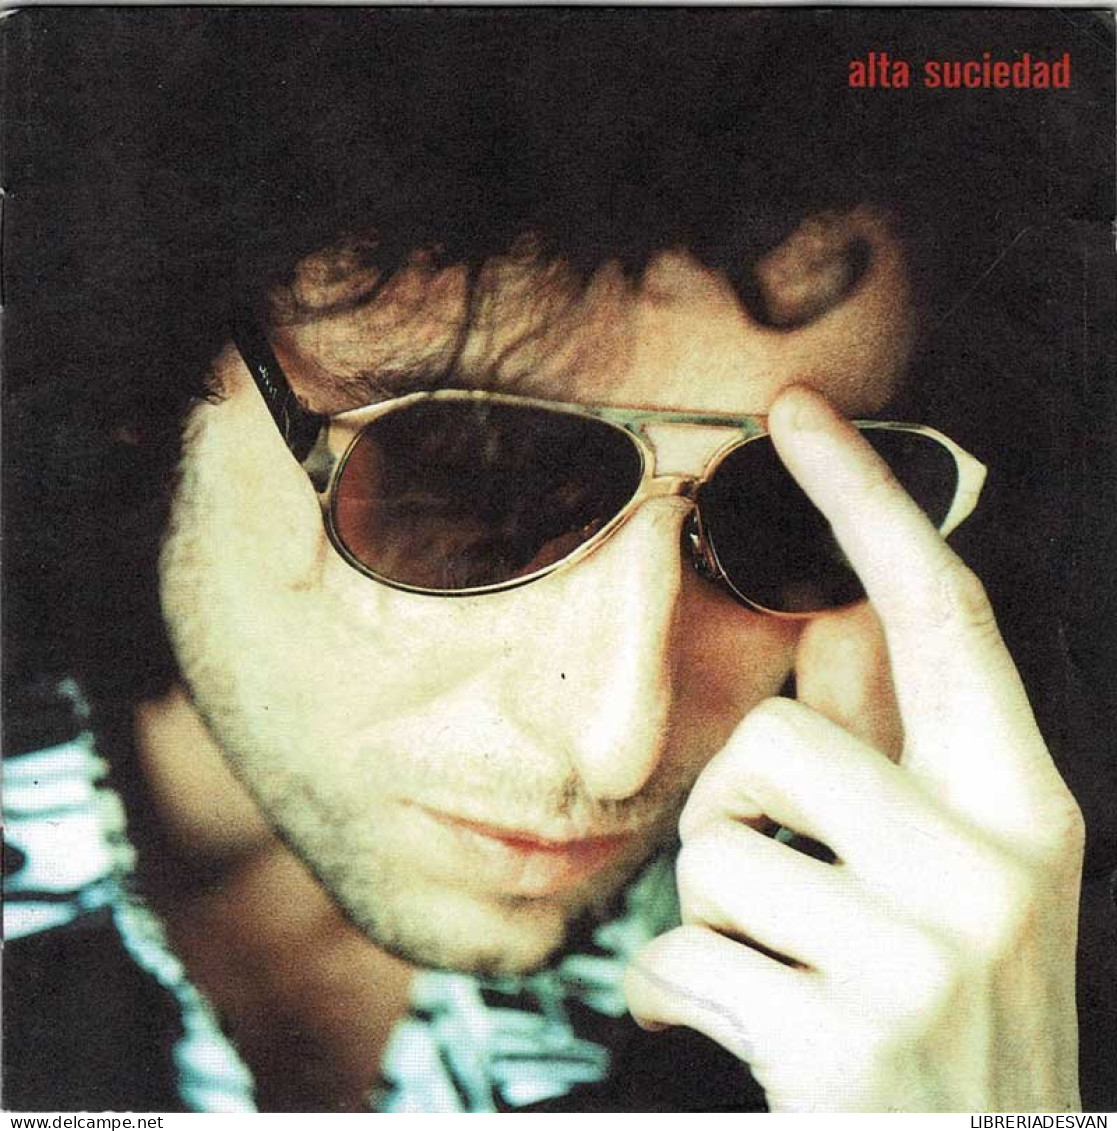 Andrés Calamaro - Alta Suciedad. CD - Rock